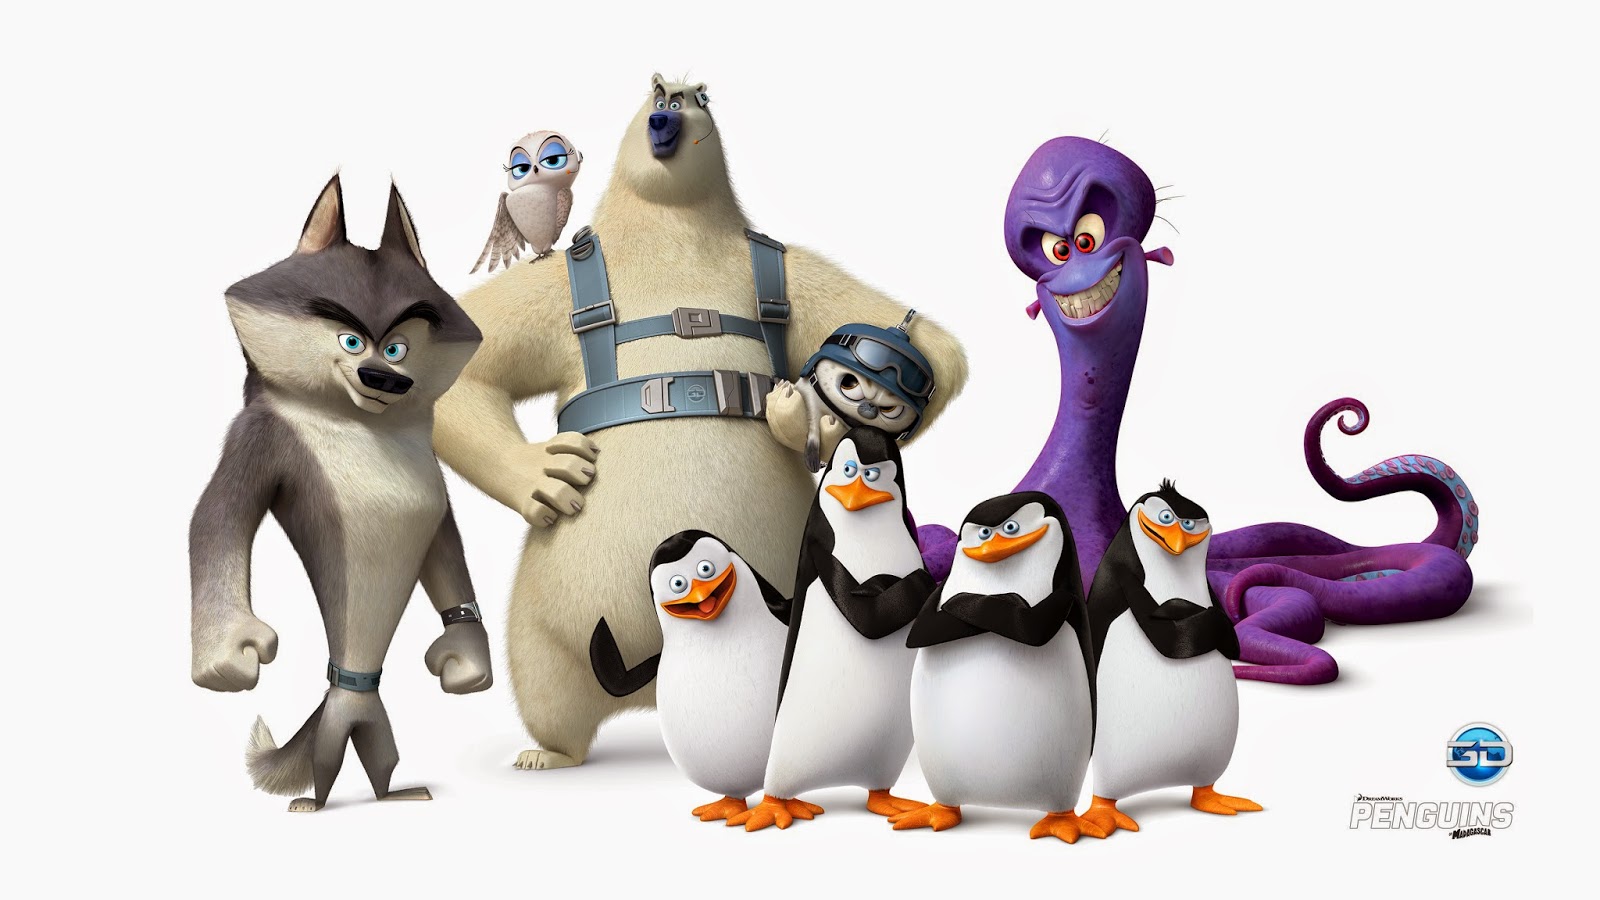 Пингвины Мадагаскара Северный ветер. Агент секрет пингвины Мадагаскара. Пингвины из Мадагаскара 2. Пингвины Мадагаскара :команда Северный ветер.